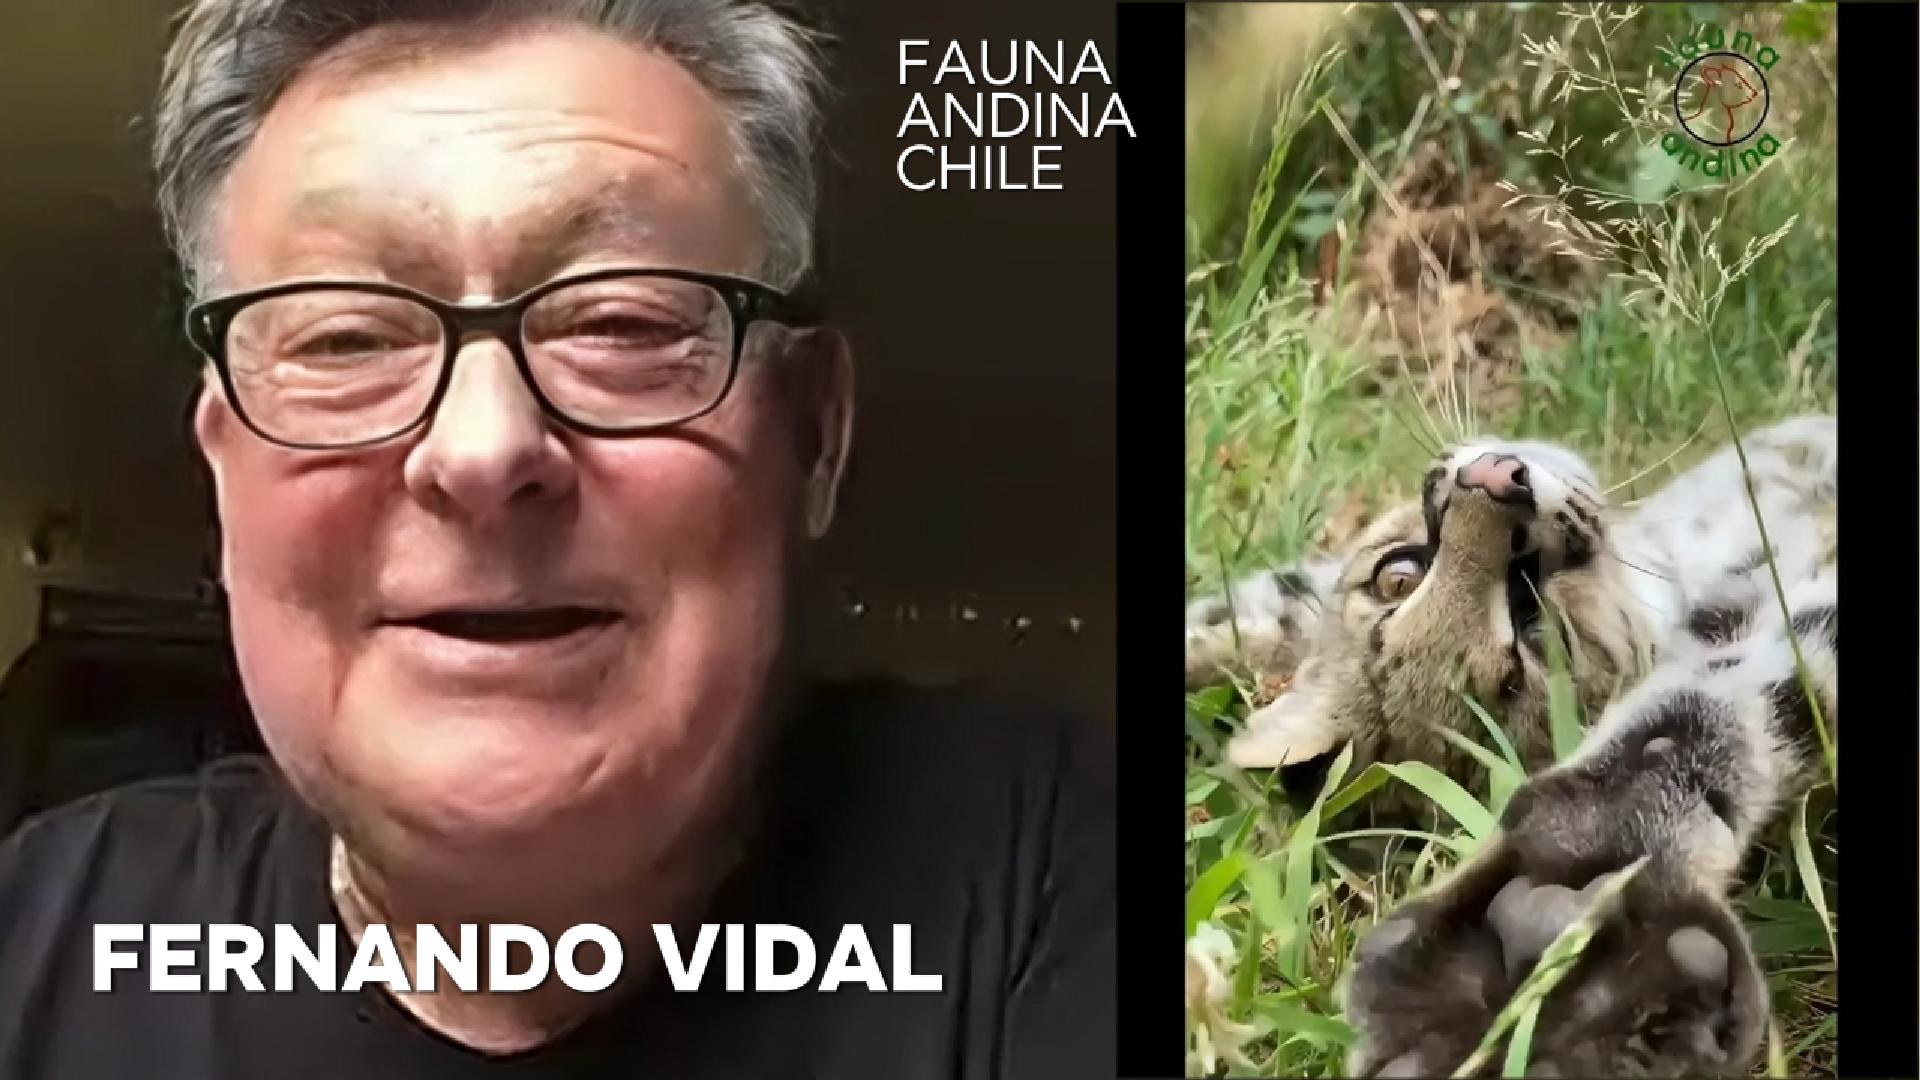 FernandoVidal-FaunaAndina-Chile-Cover